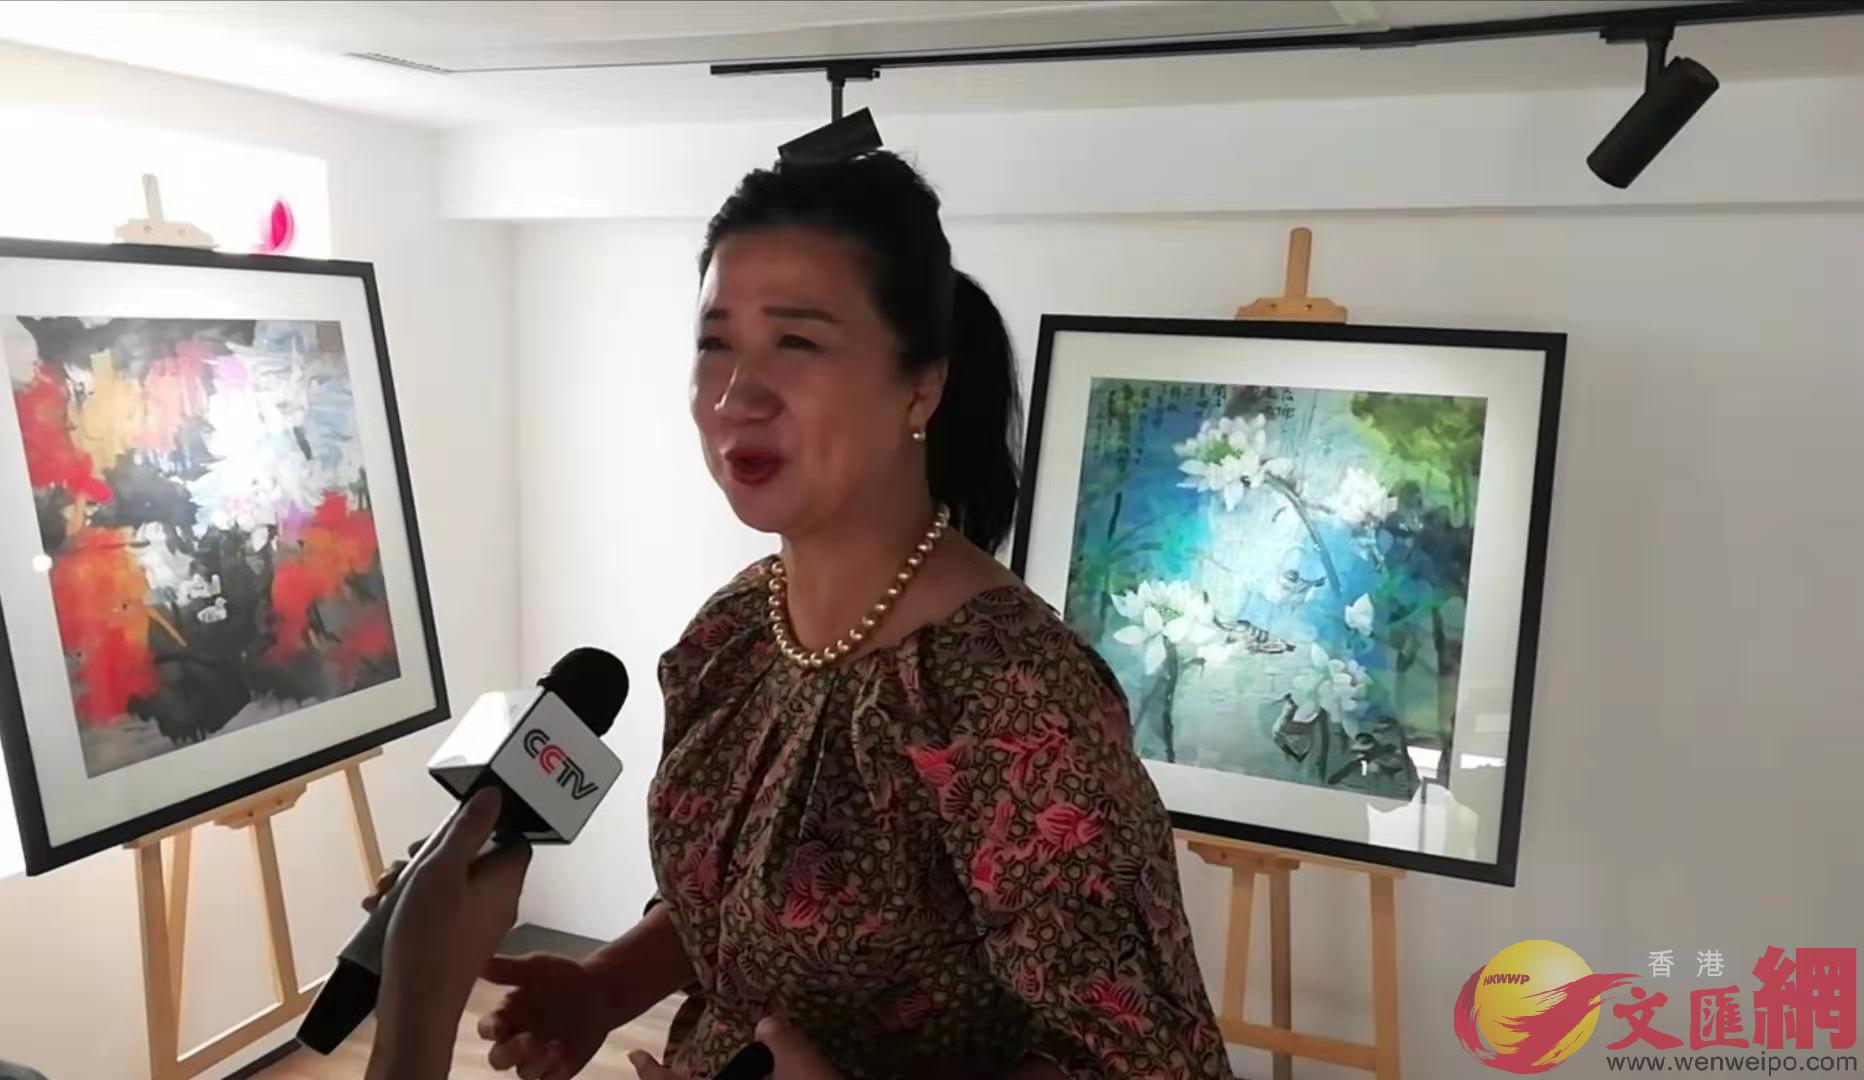 香港藝術家蔡布穀表示A中菲兩國藝術家到對方國家去寫生A增進了了解和友誼]記者 李昌鴻 攝^